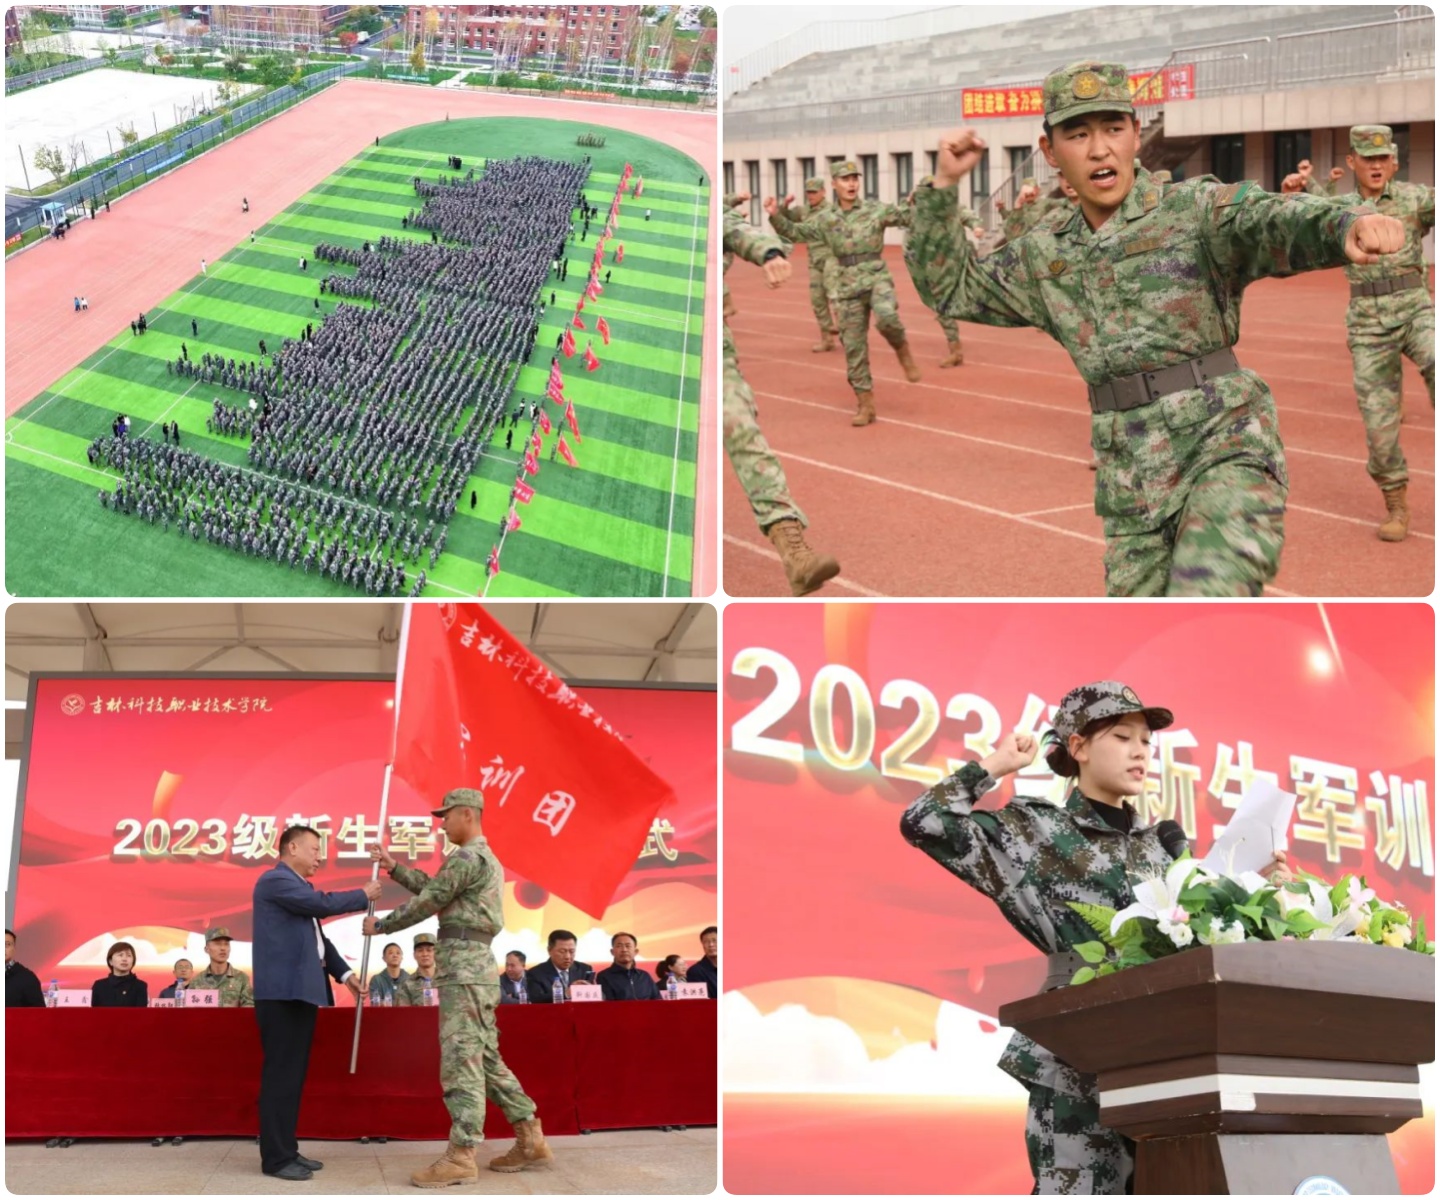 吉科职院举行2023级新生军训开营仪式